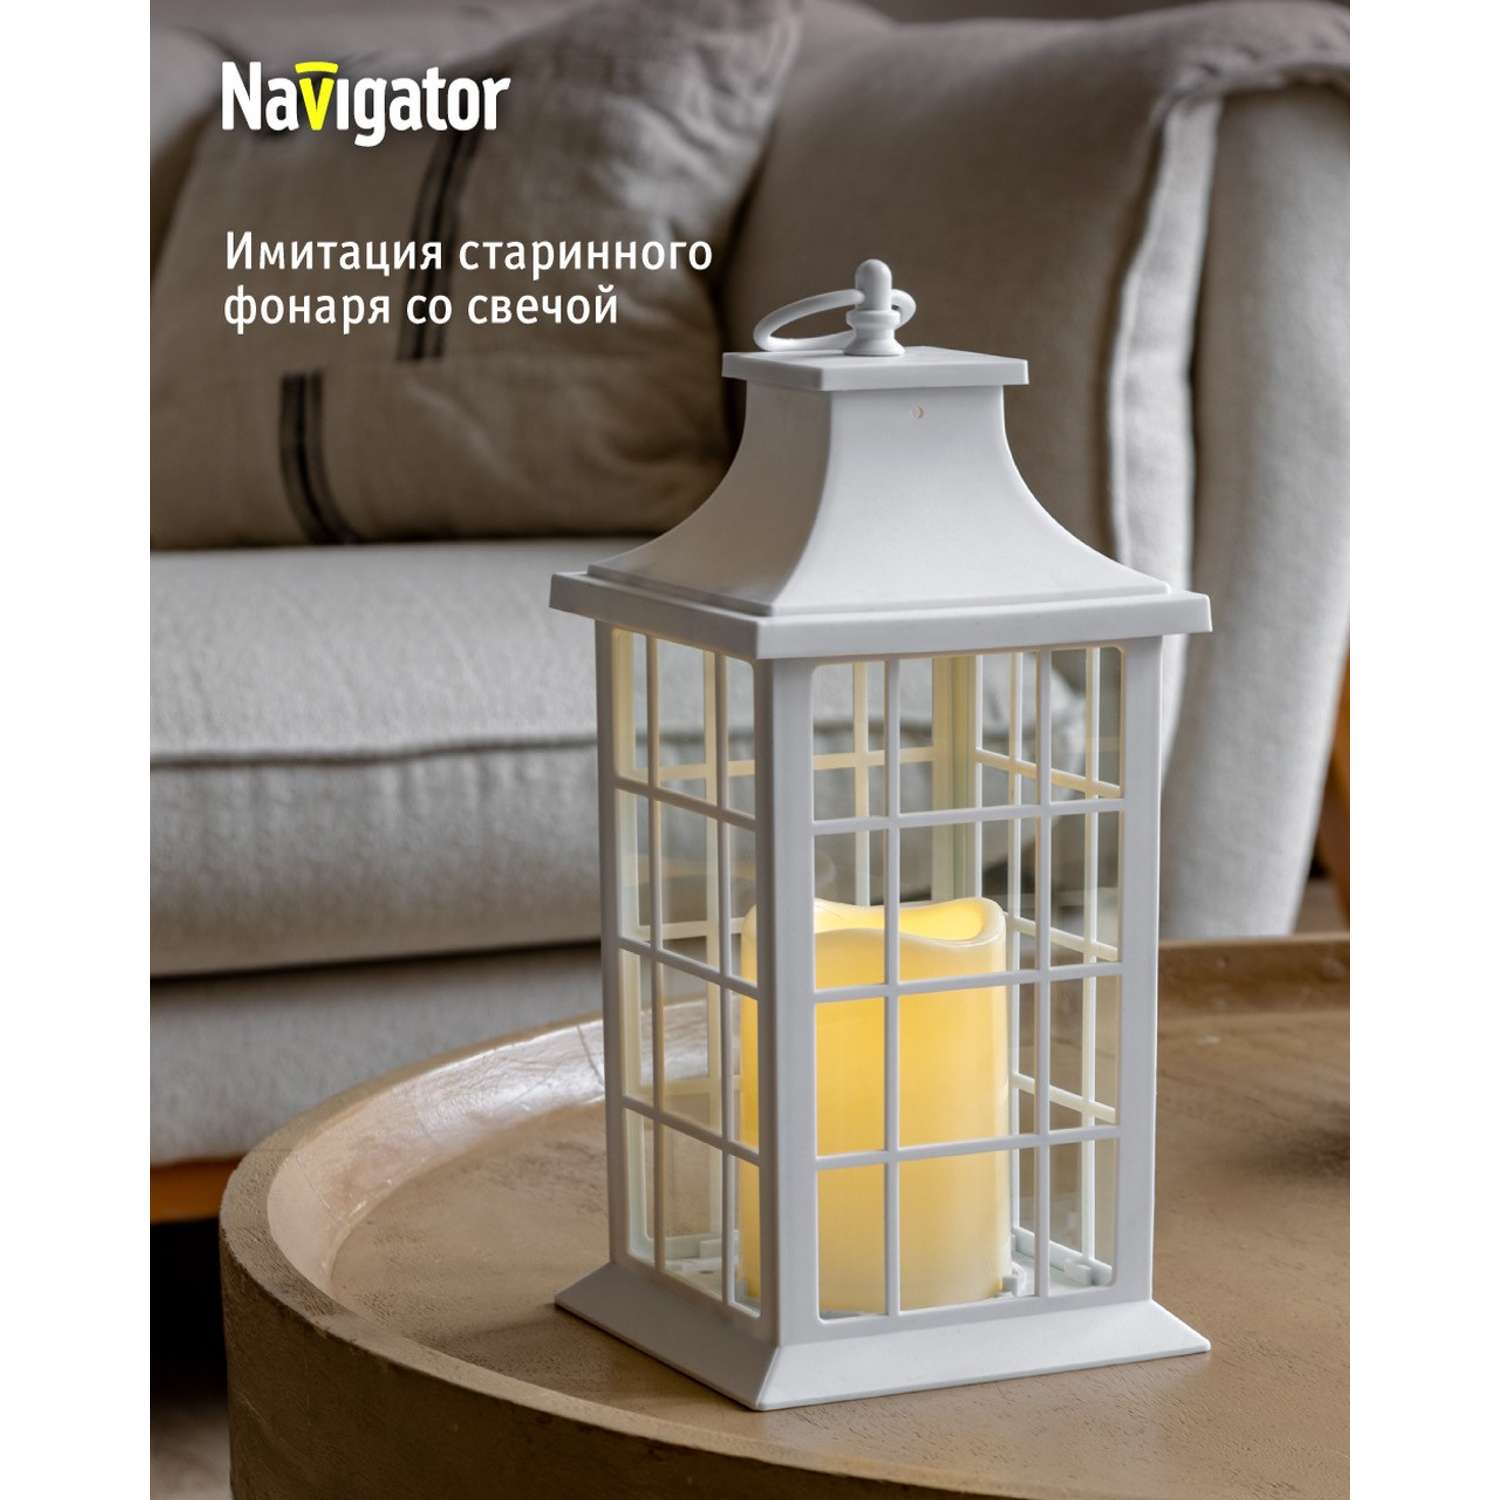 Декоративный светильник-ночник NaVigator светодиодный для детской комнаты узор белая решетка - фото 1